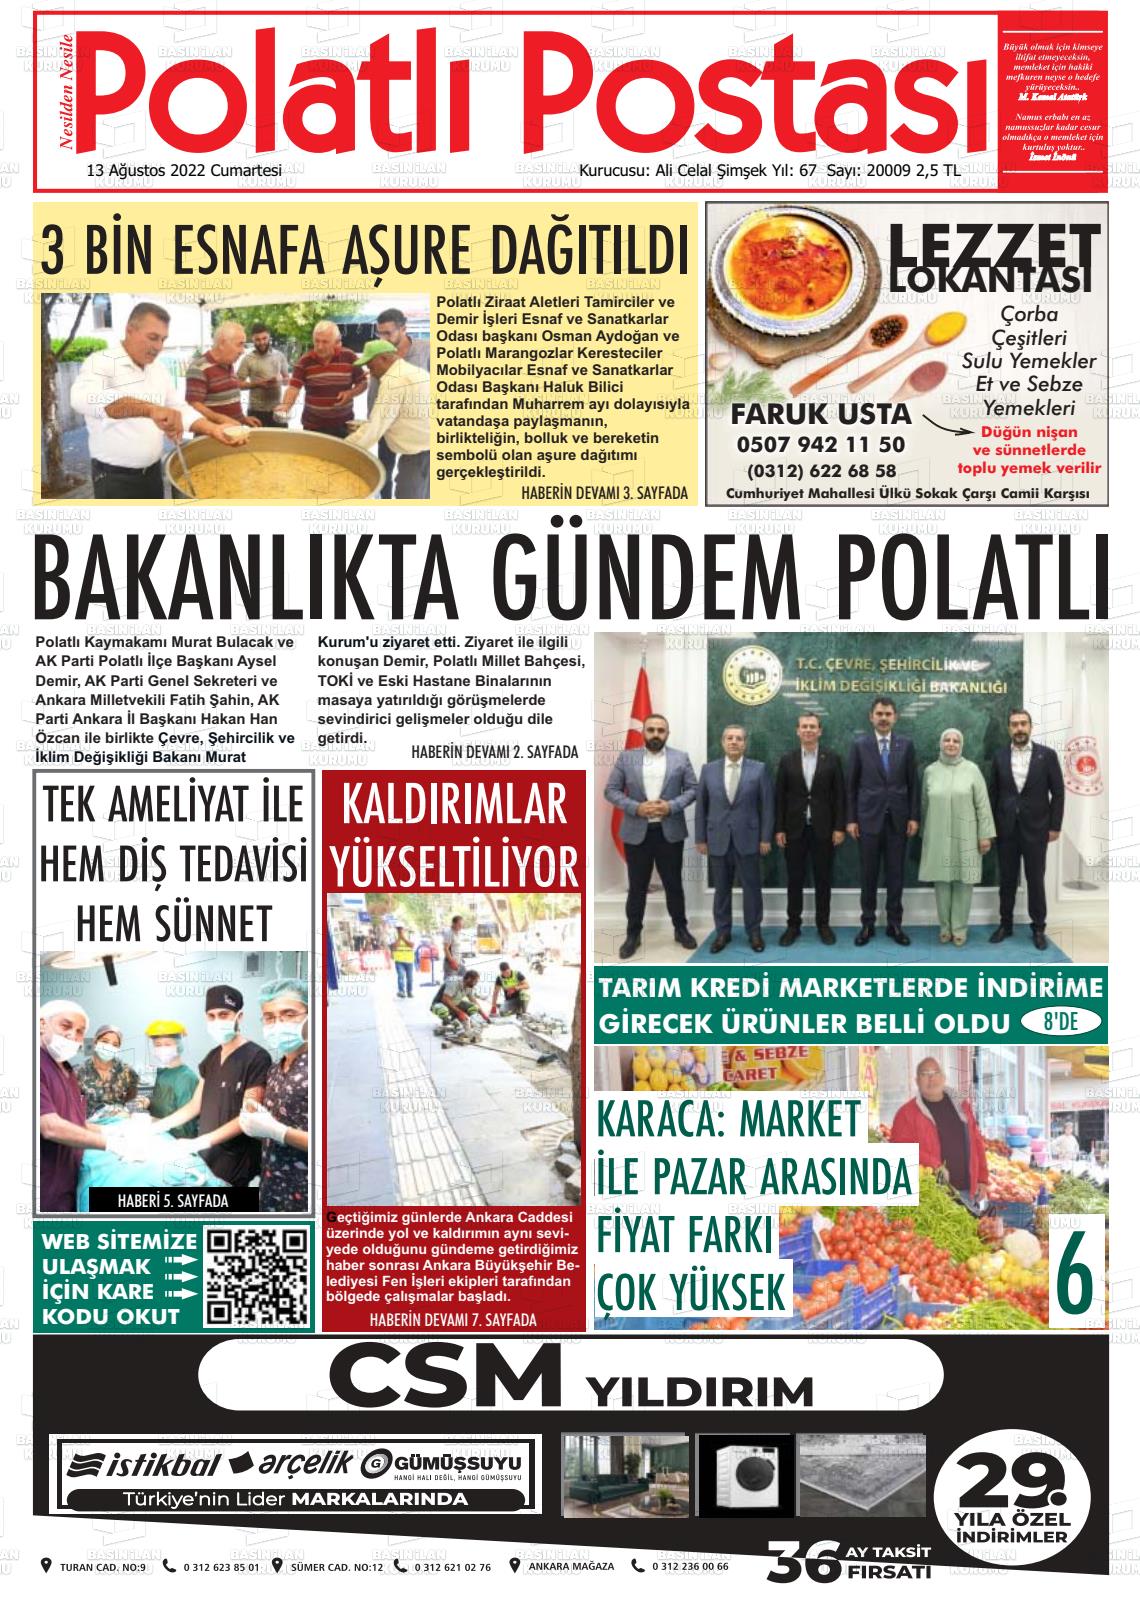 13 Ağustos 2022 Polatlı Postası Gazete Manşeti